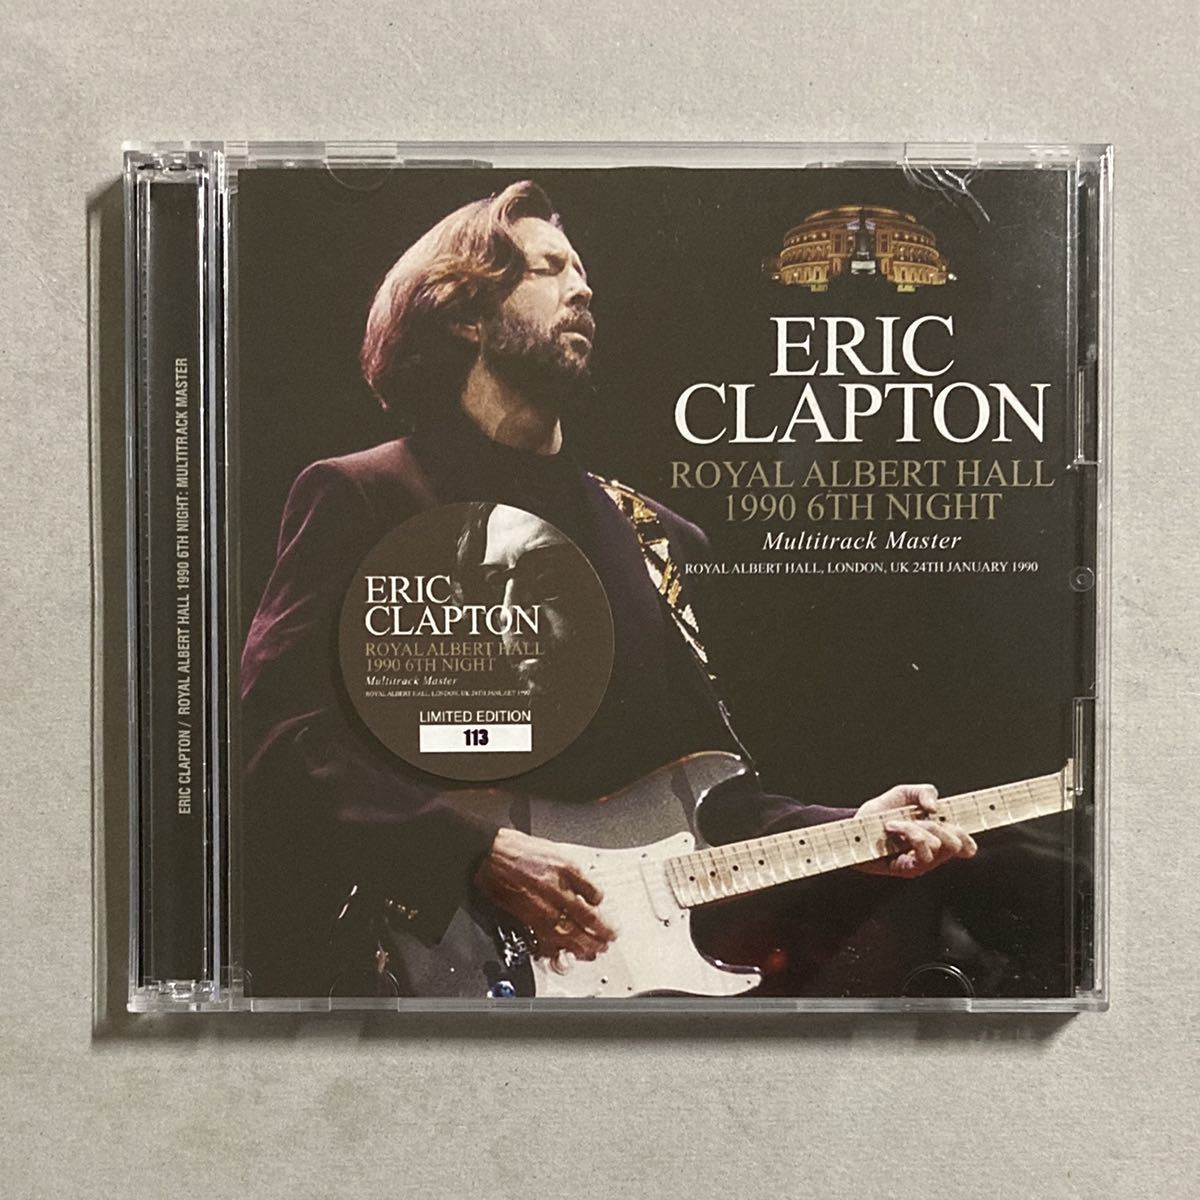 ヤフオク! -「eric clapton 1990」(Eric Clapton) (E)の落札相場・落札価格